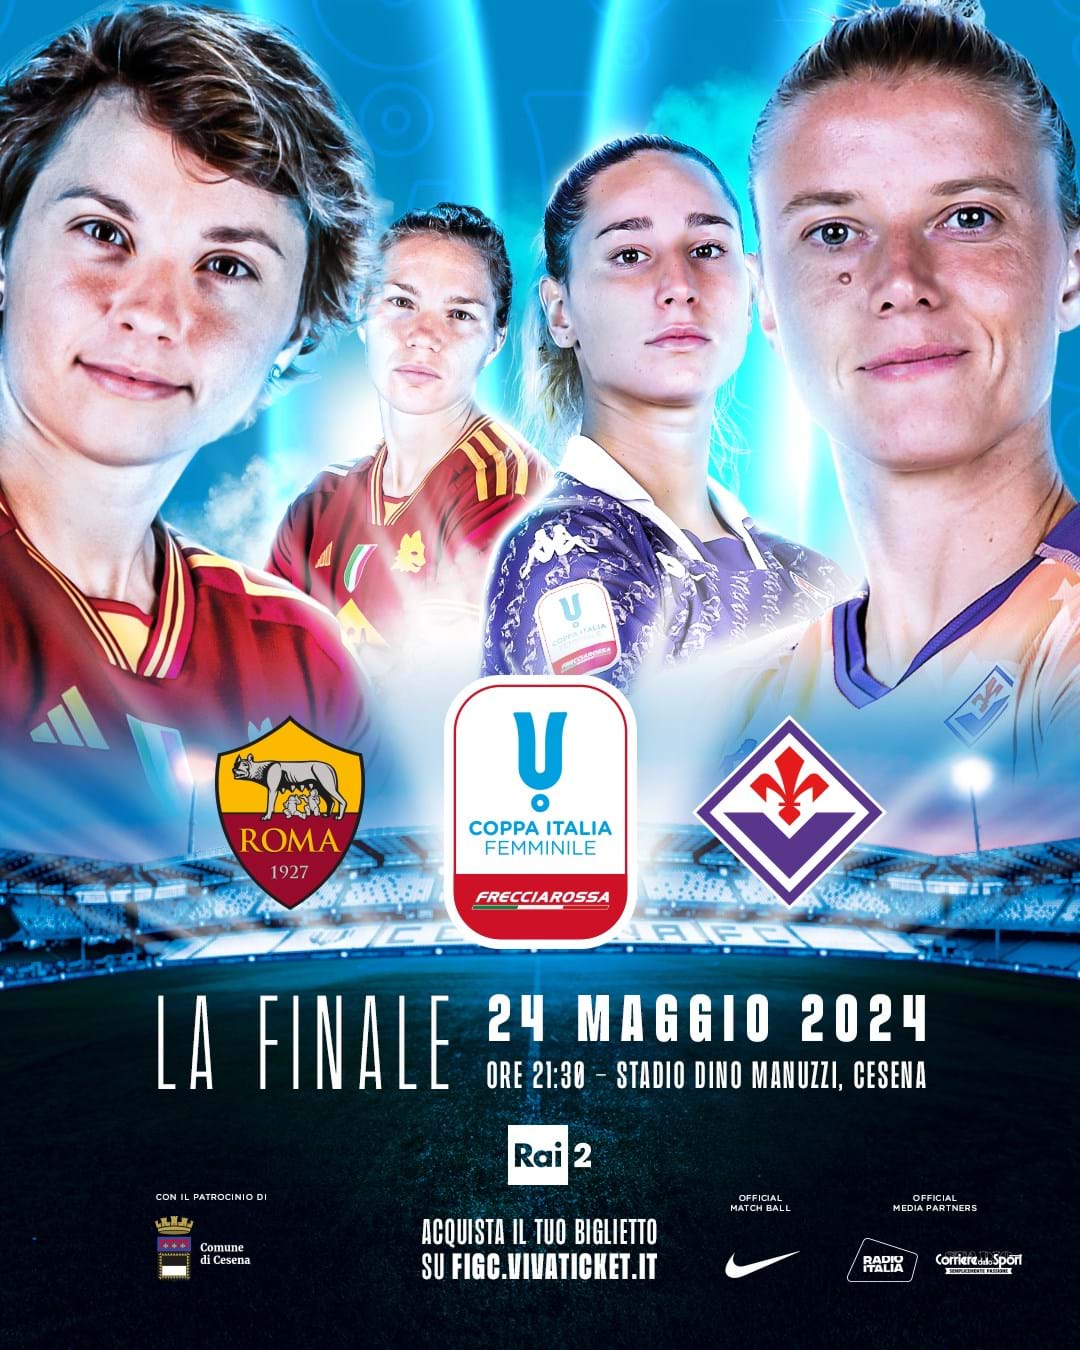 Coppa Italia femminile Frecciarossa, a Cesena il 24 maggio: biglietti disponibili per le società del territorio